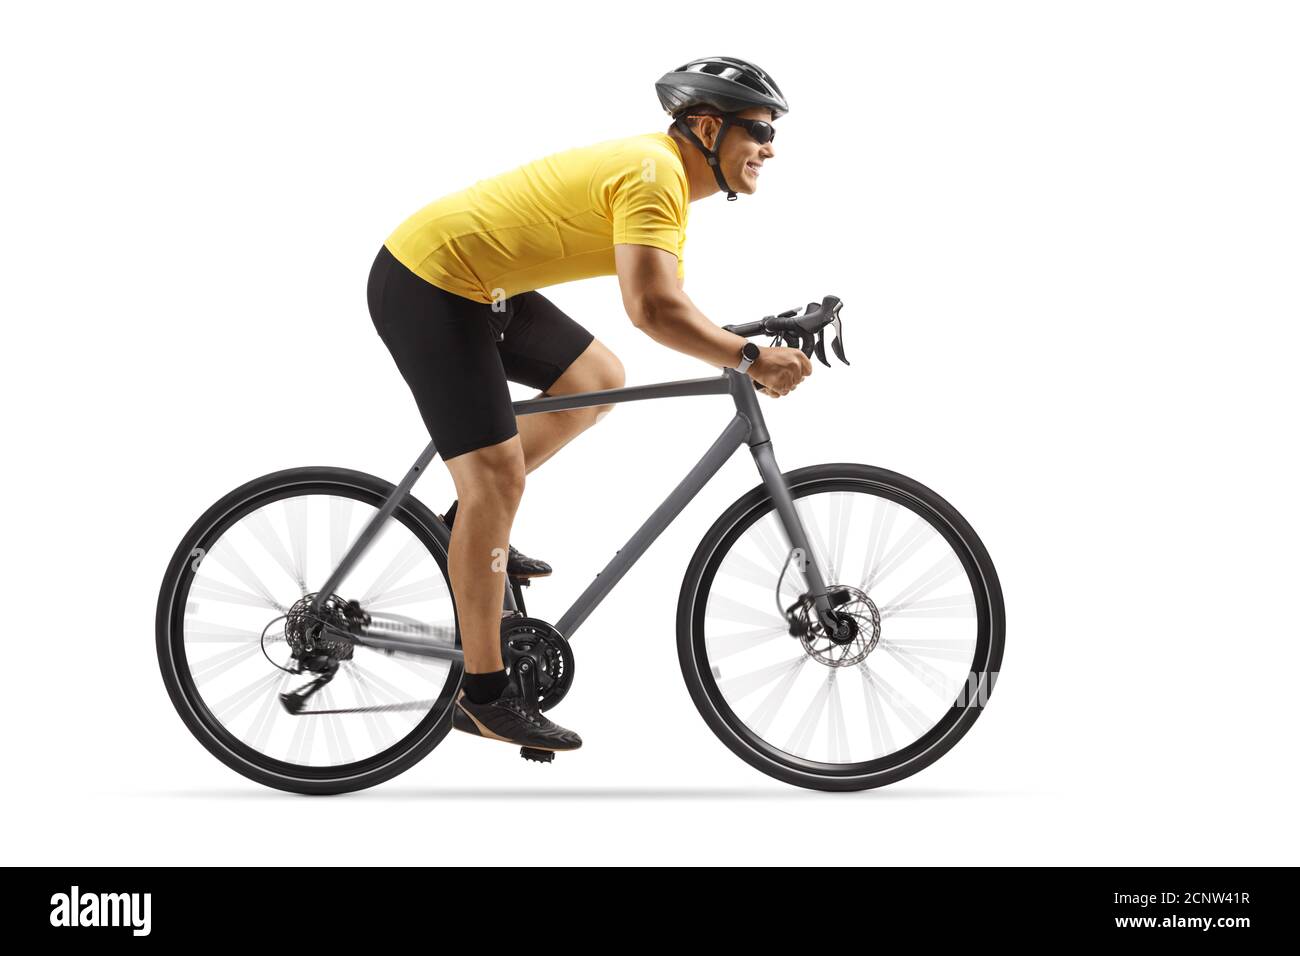 Foto di profilo di un ragazzo che guida una bici da strada grigia isolato su sfondo bianco Foto Stock